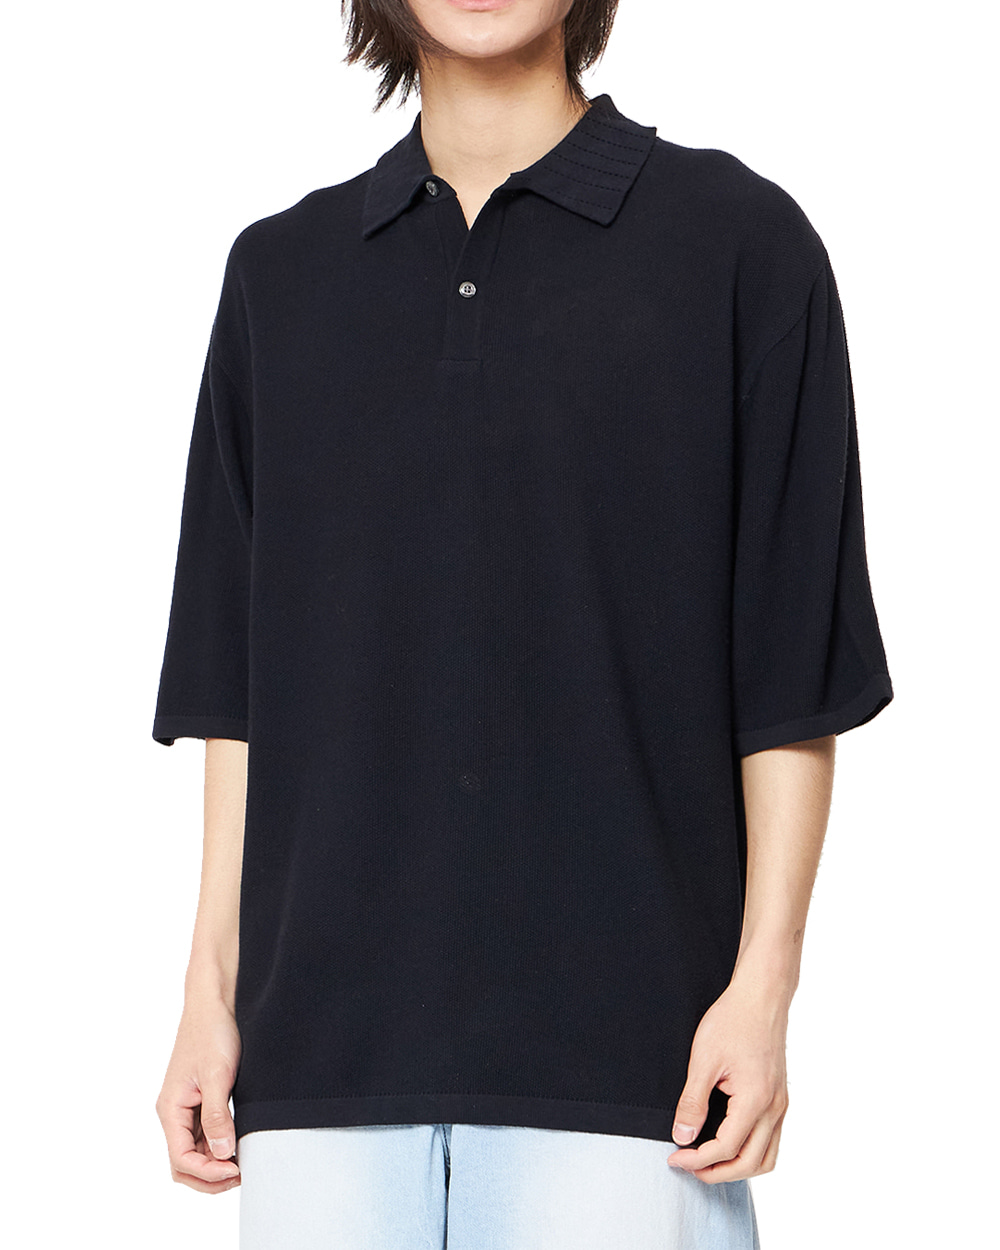 언어펙티드 Knitted polo shirt (Navy)